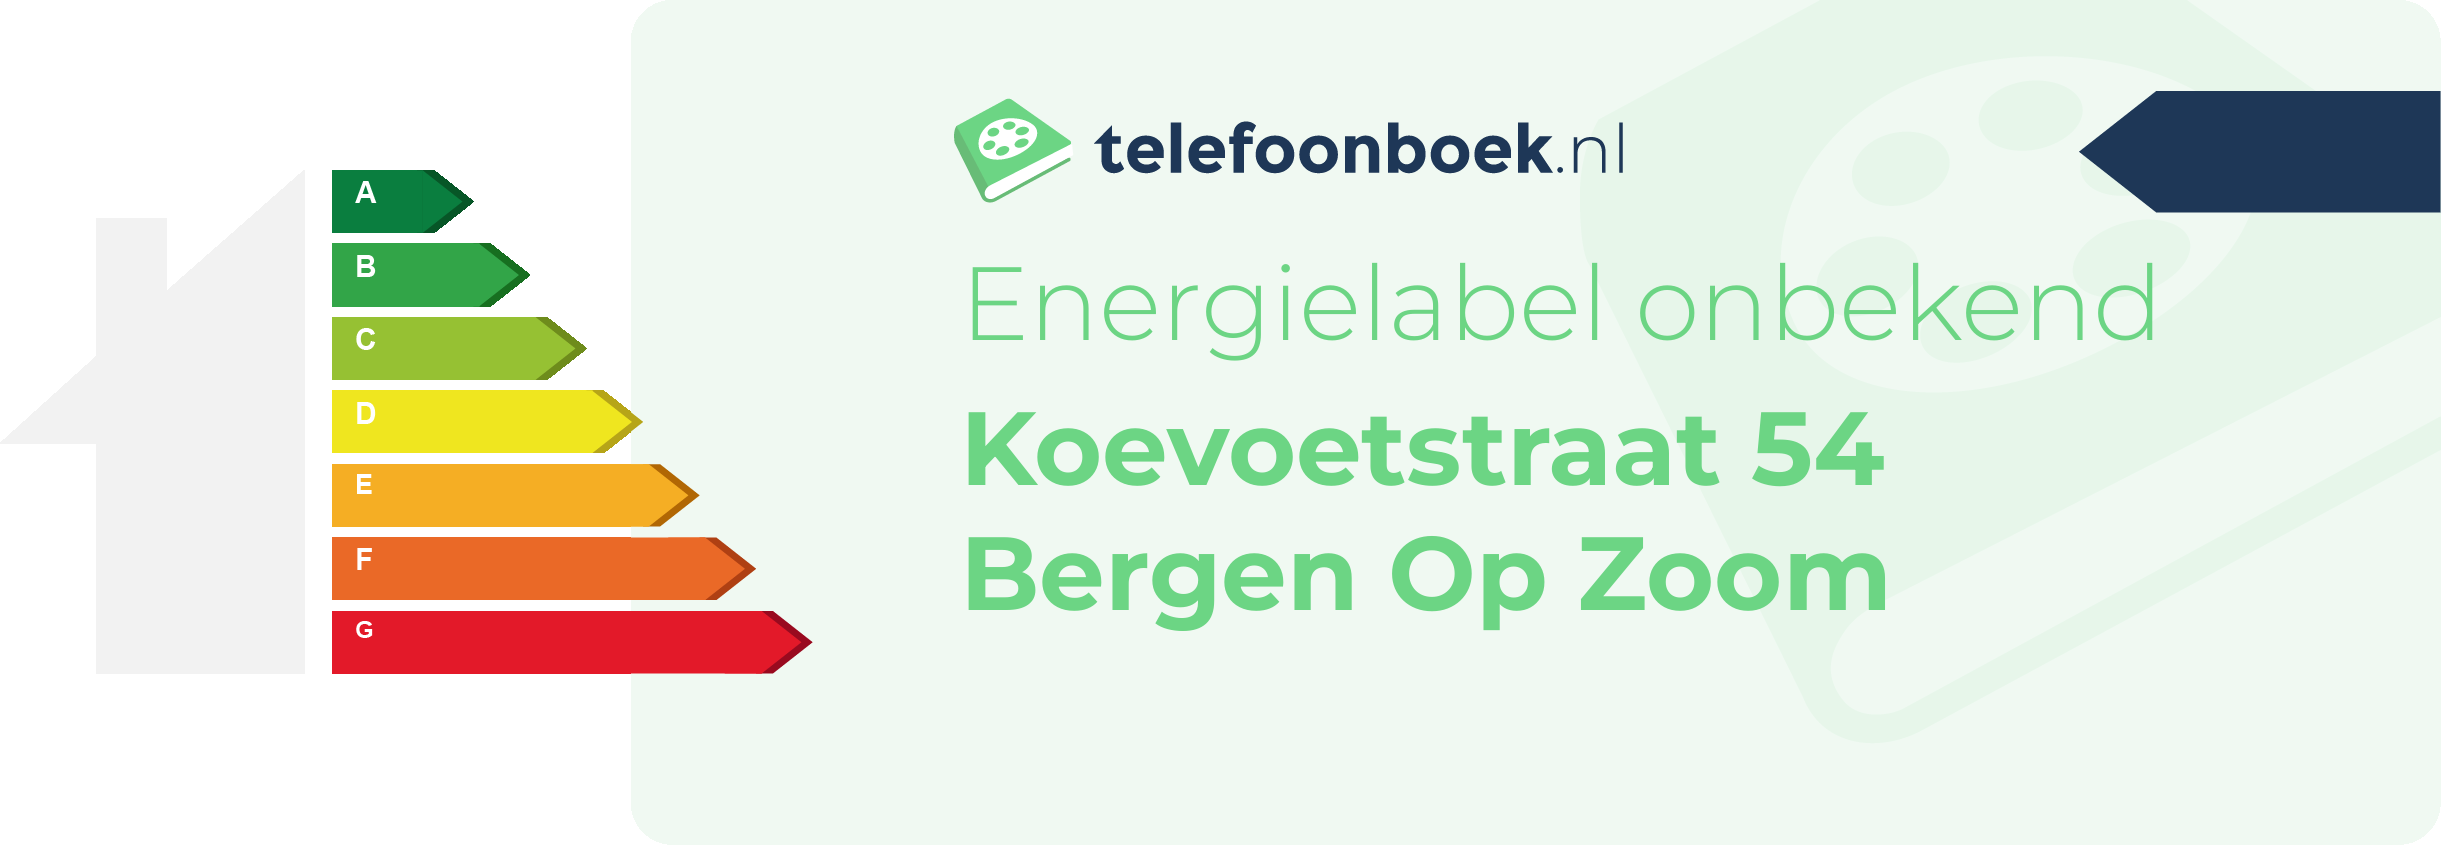 Energielabel Koevoetstraat 54 Bergen Op Zoom